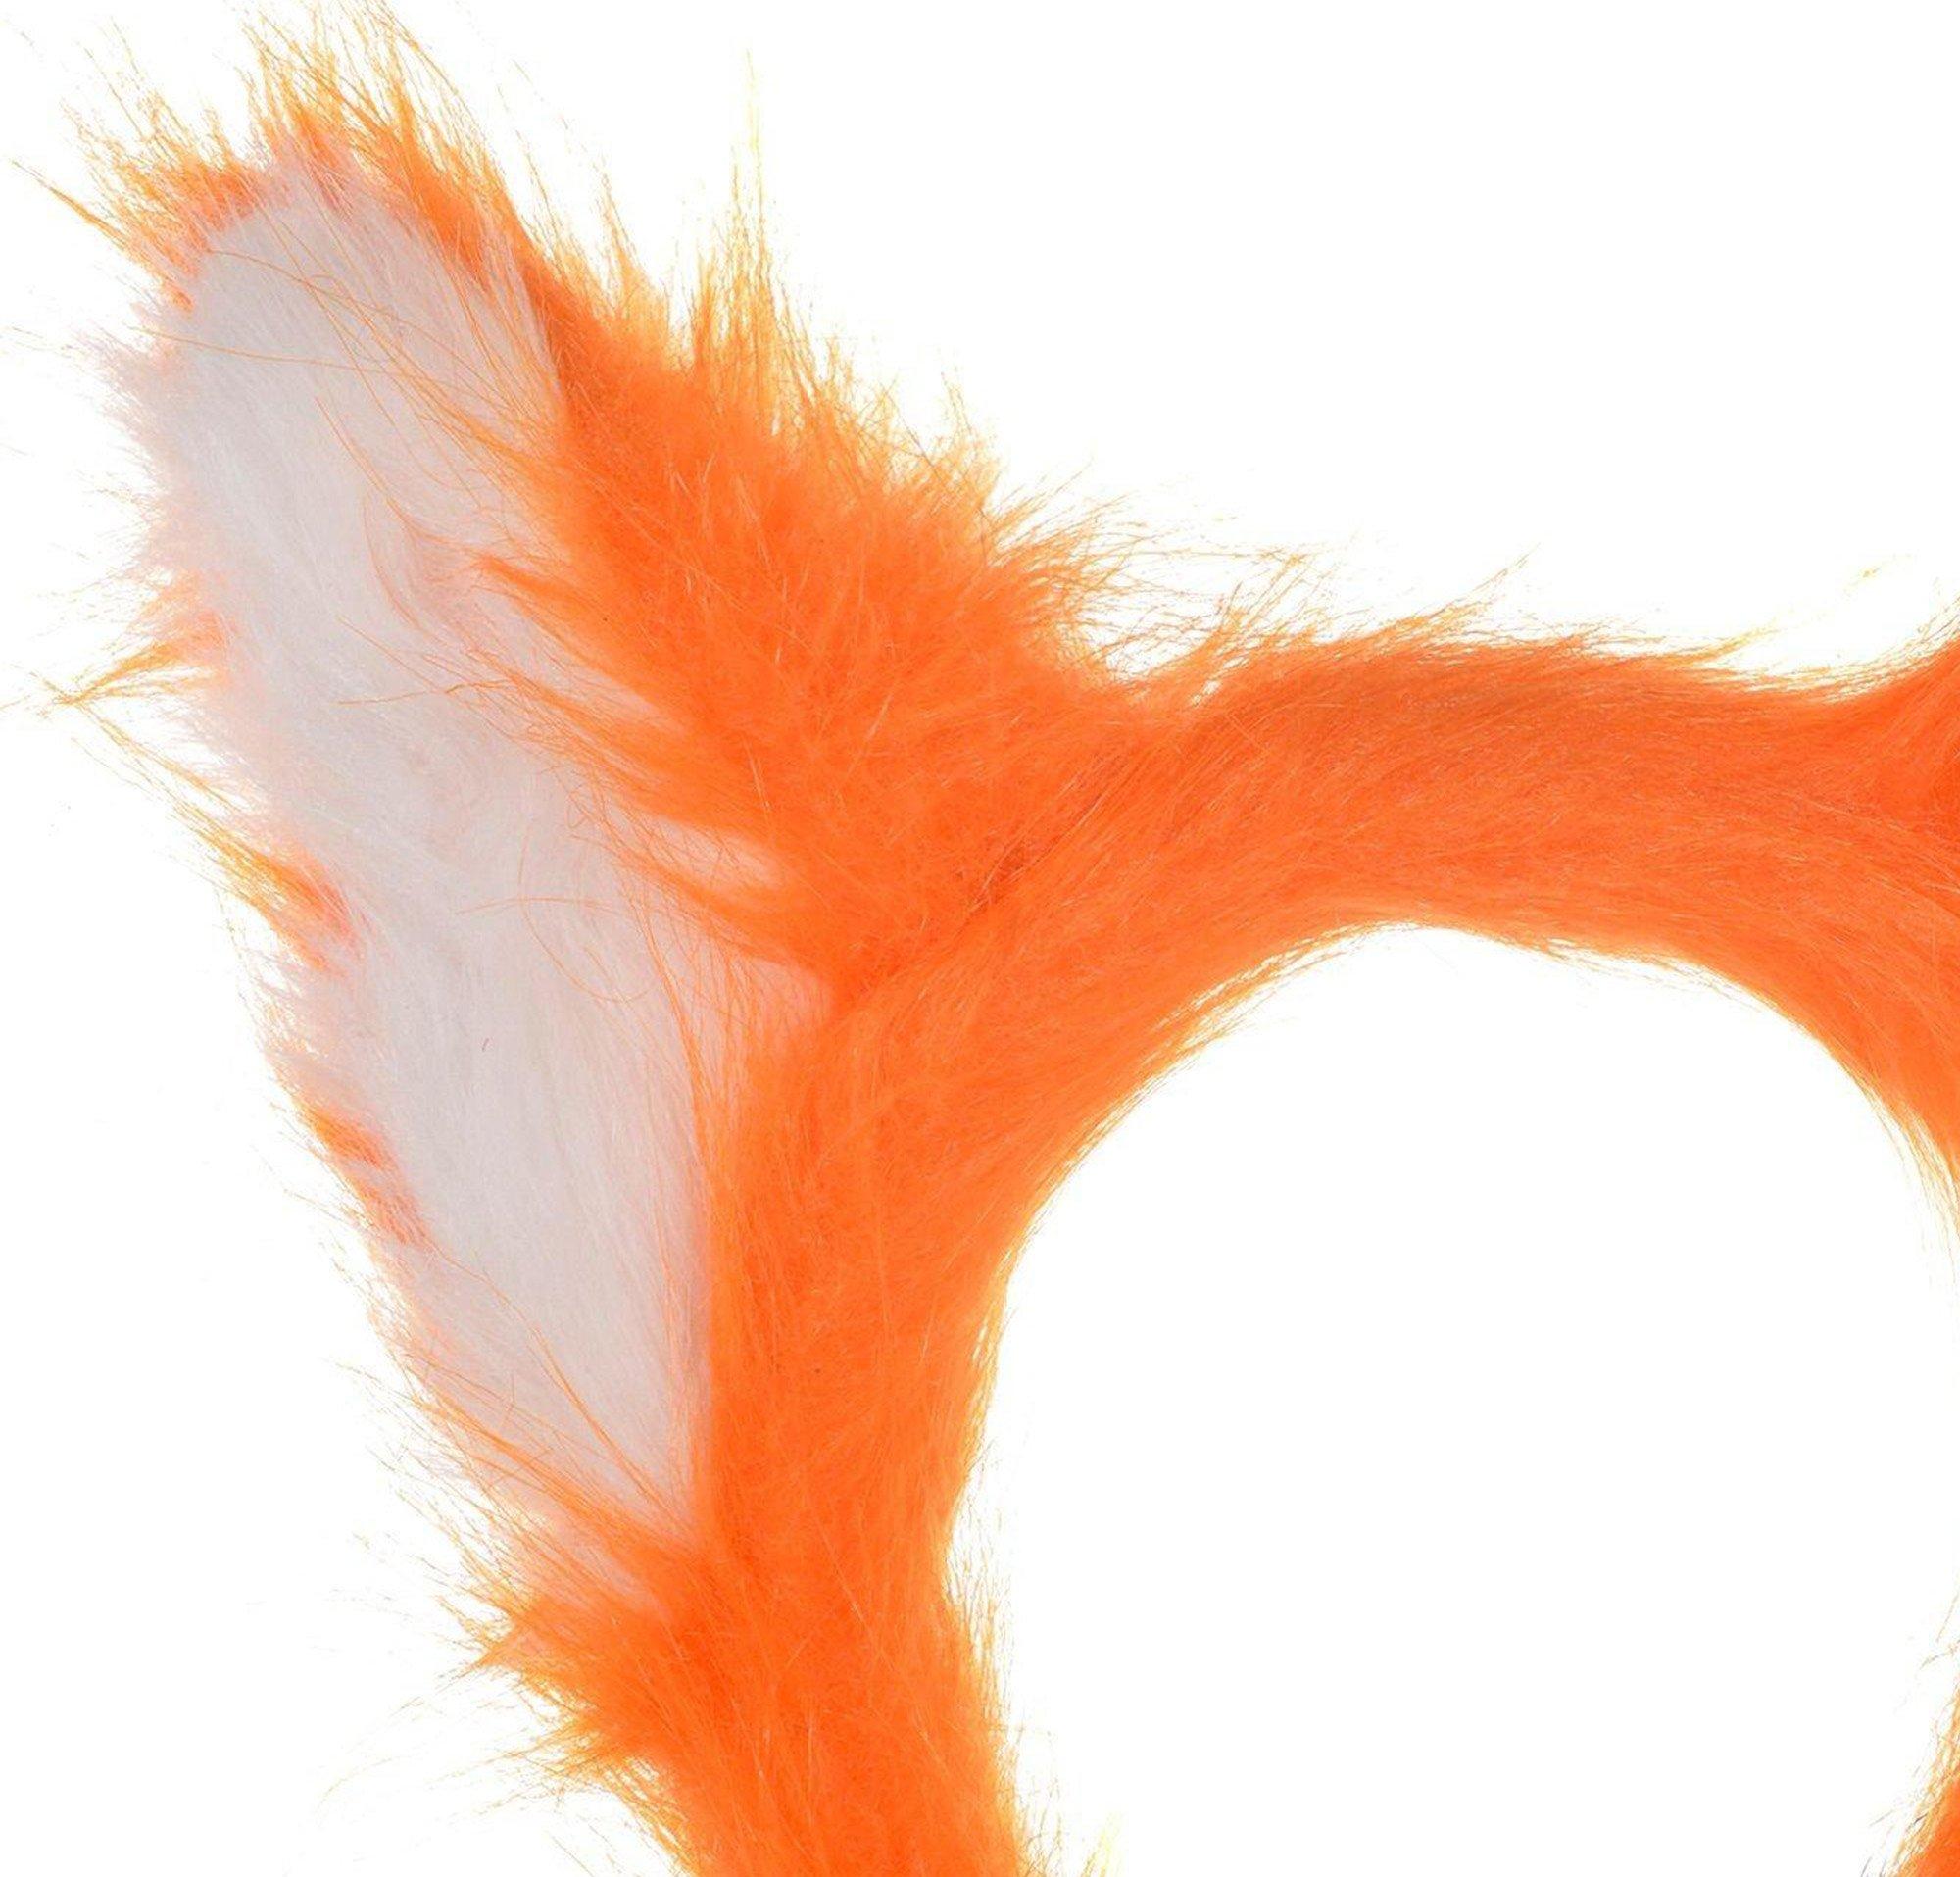 Adult Fox Ears Headband